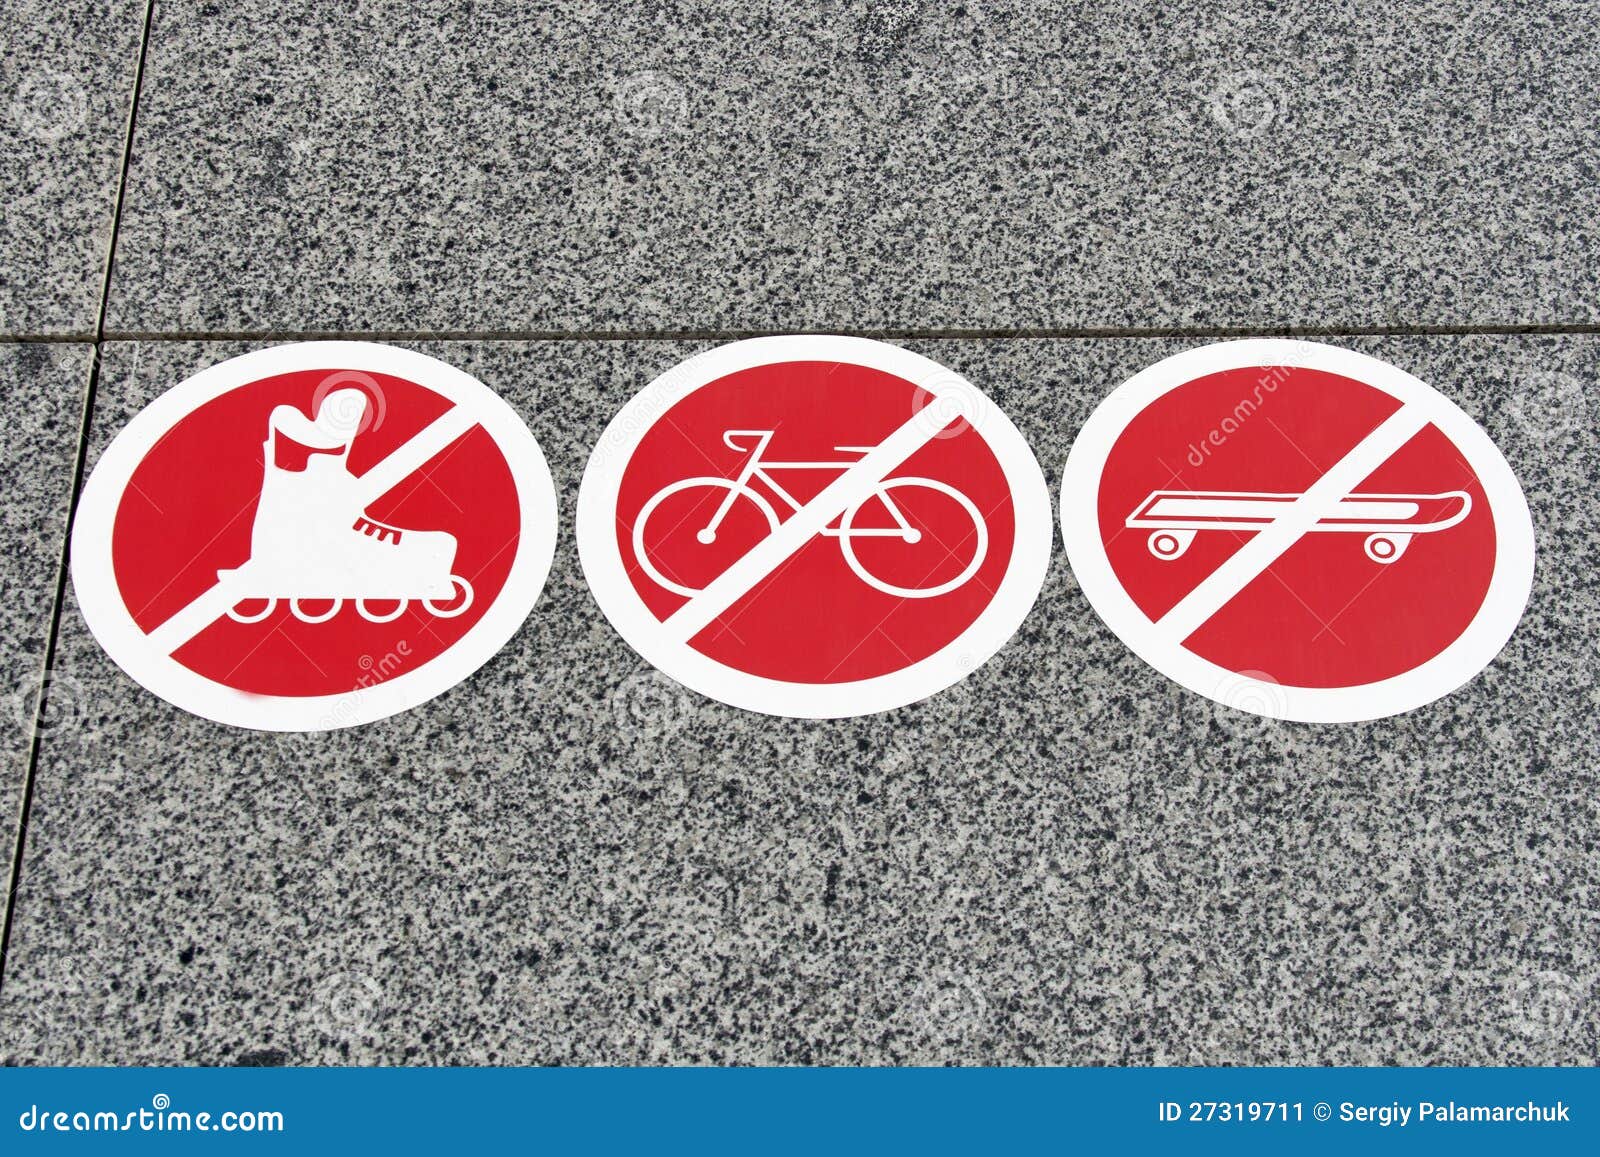 Можно ездить с запретом. Значок запрещено скейтборд. Кататься на самокате знак. Кататься на самокате запрещено знак. Запретные знаки самокат.